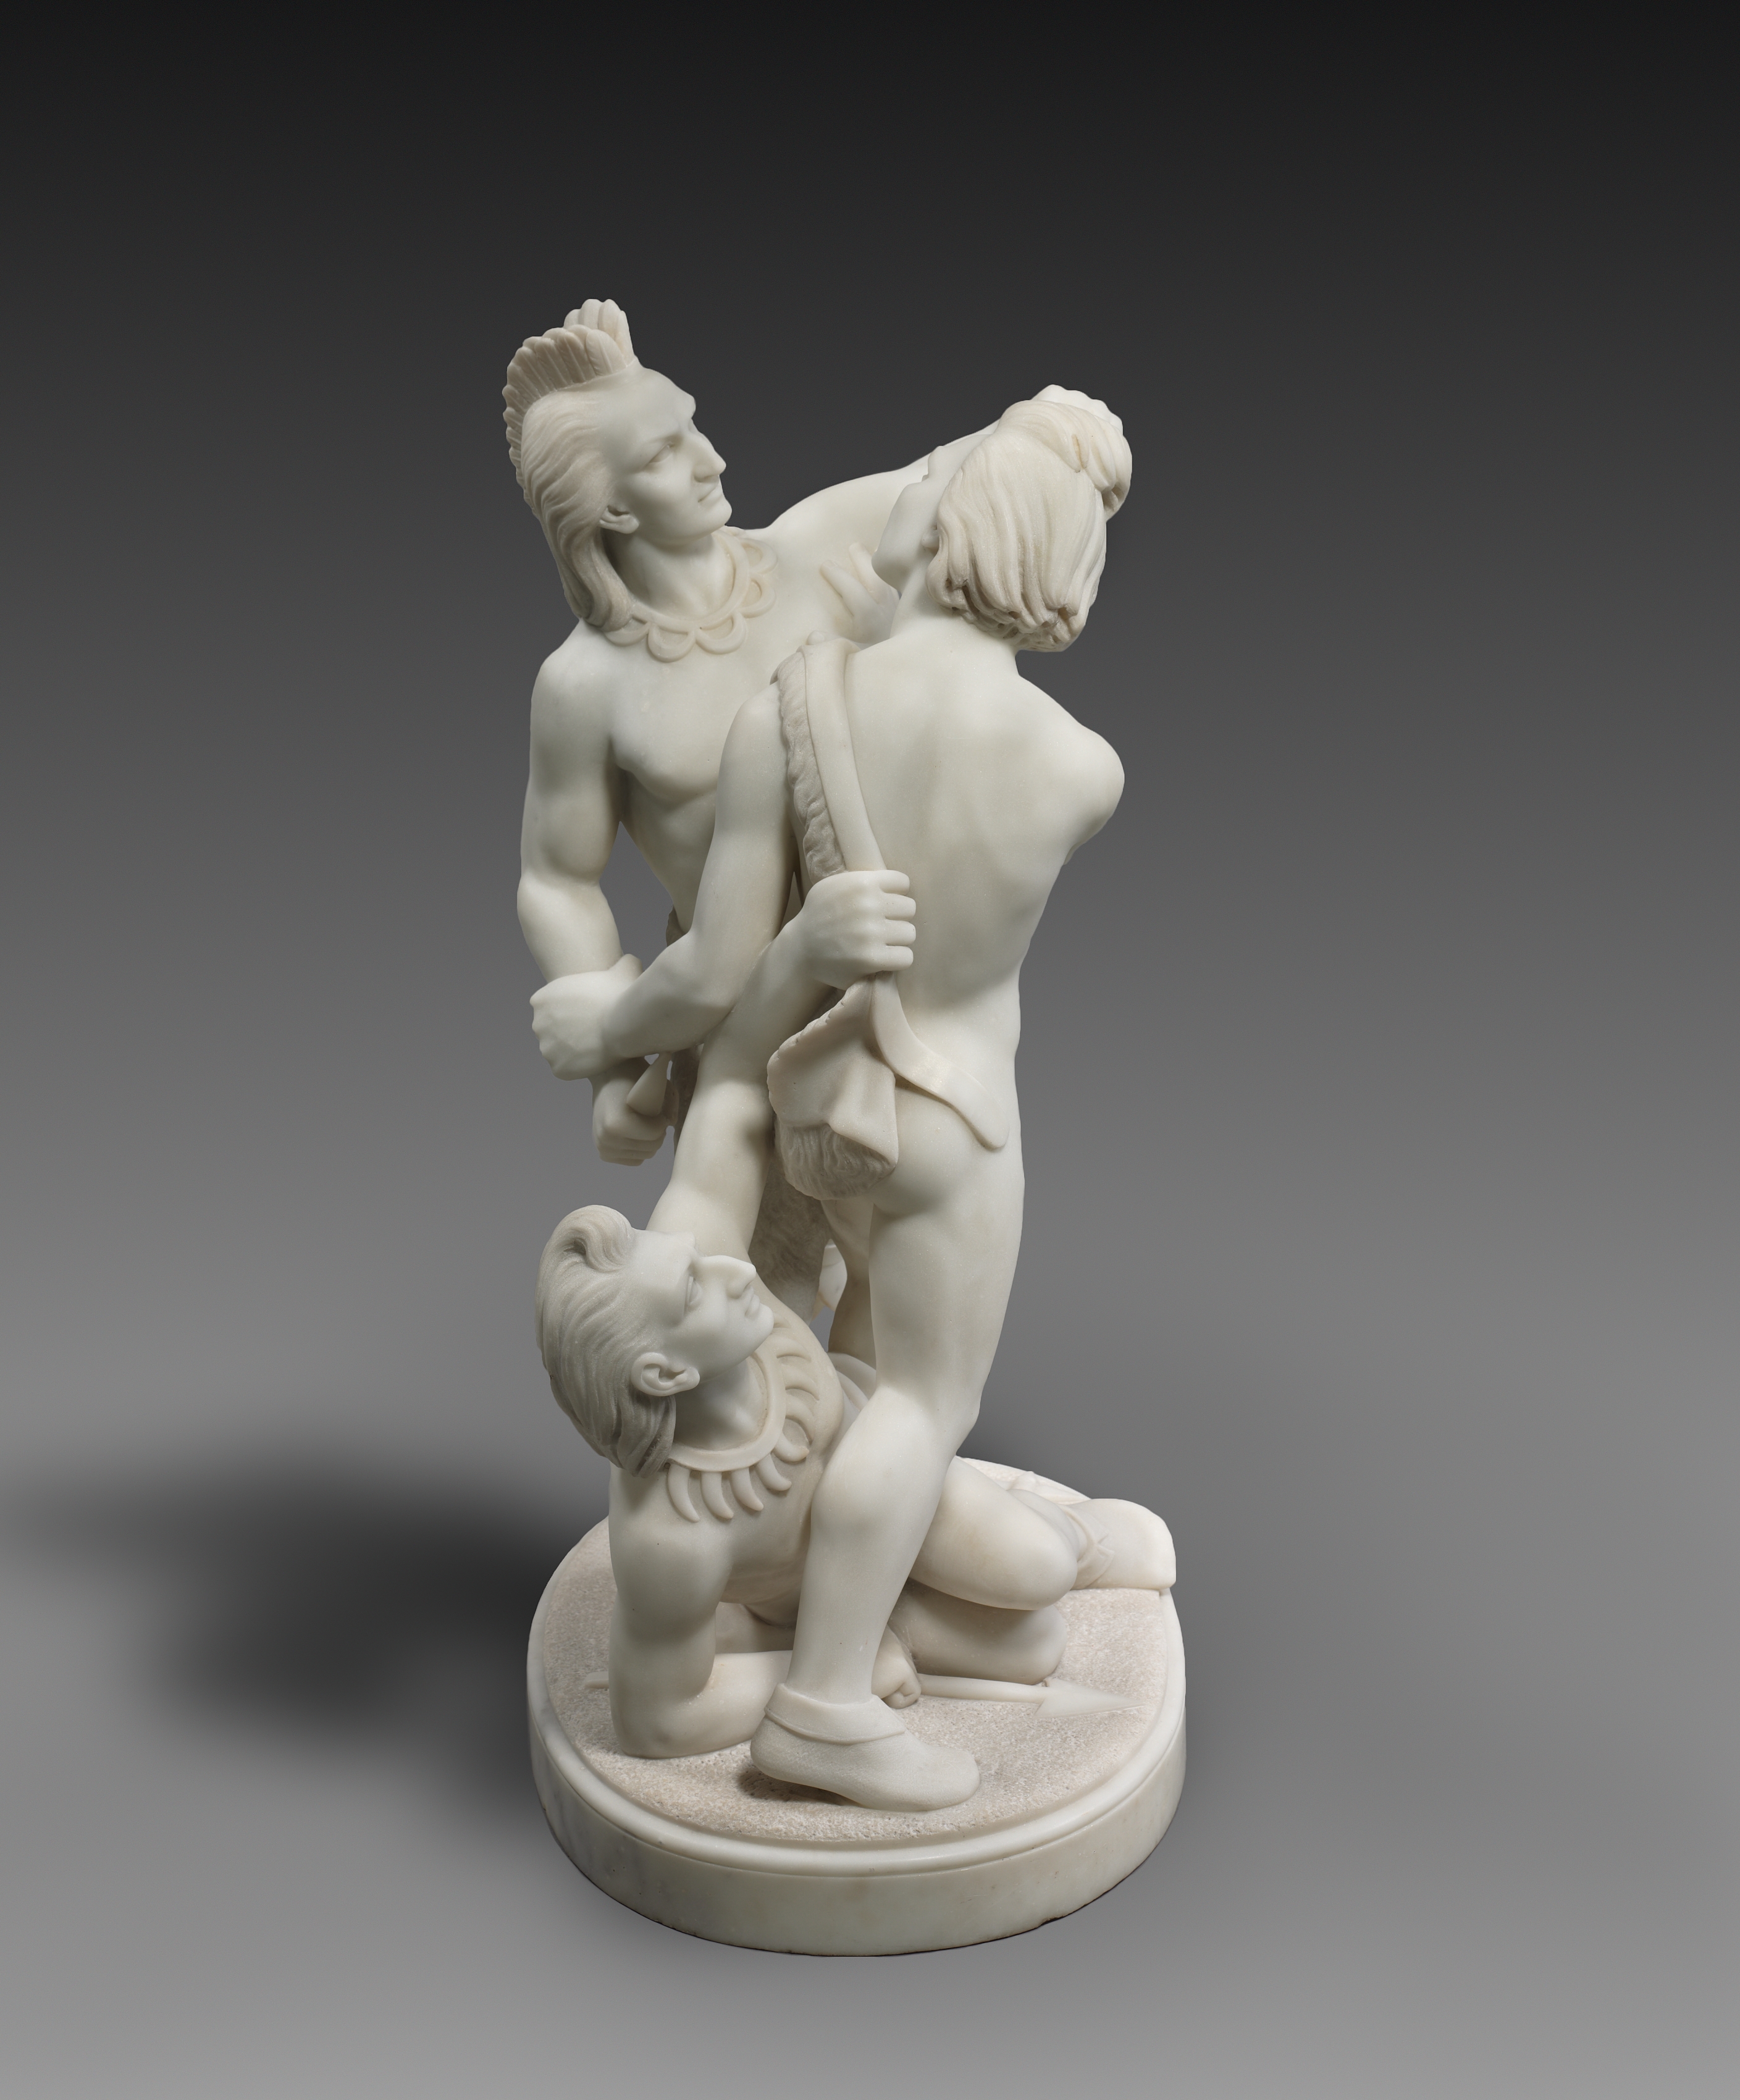 印第安競技 by Edmonia Lewis - 1868 - 76.2 x 48.3 x 36.5 cm 